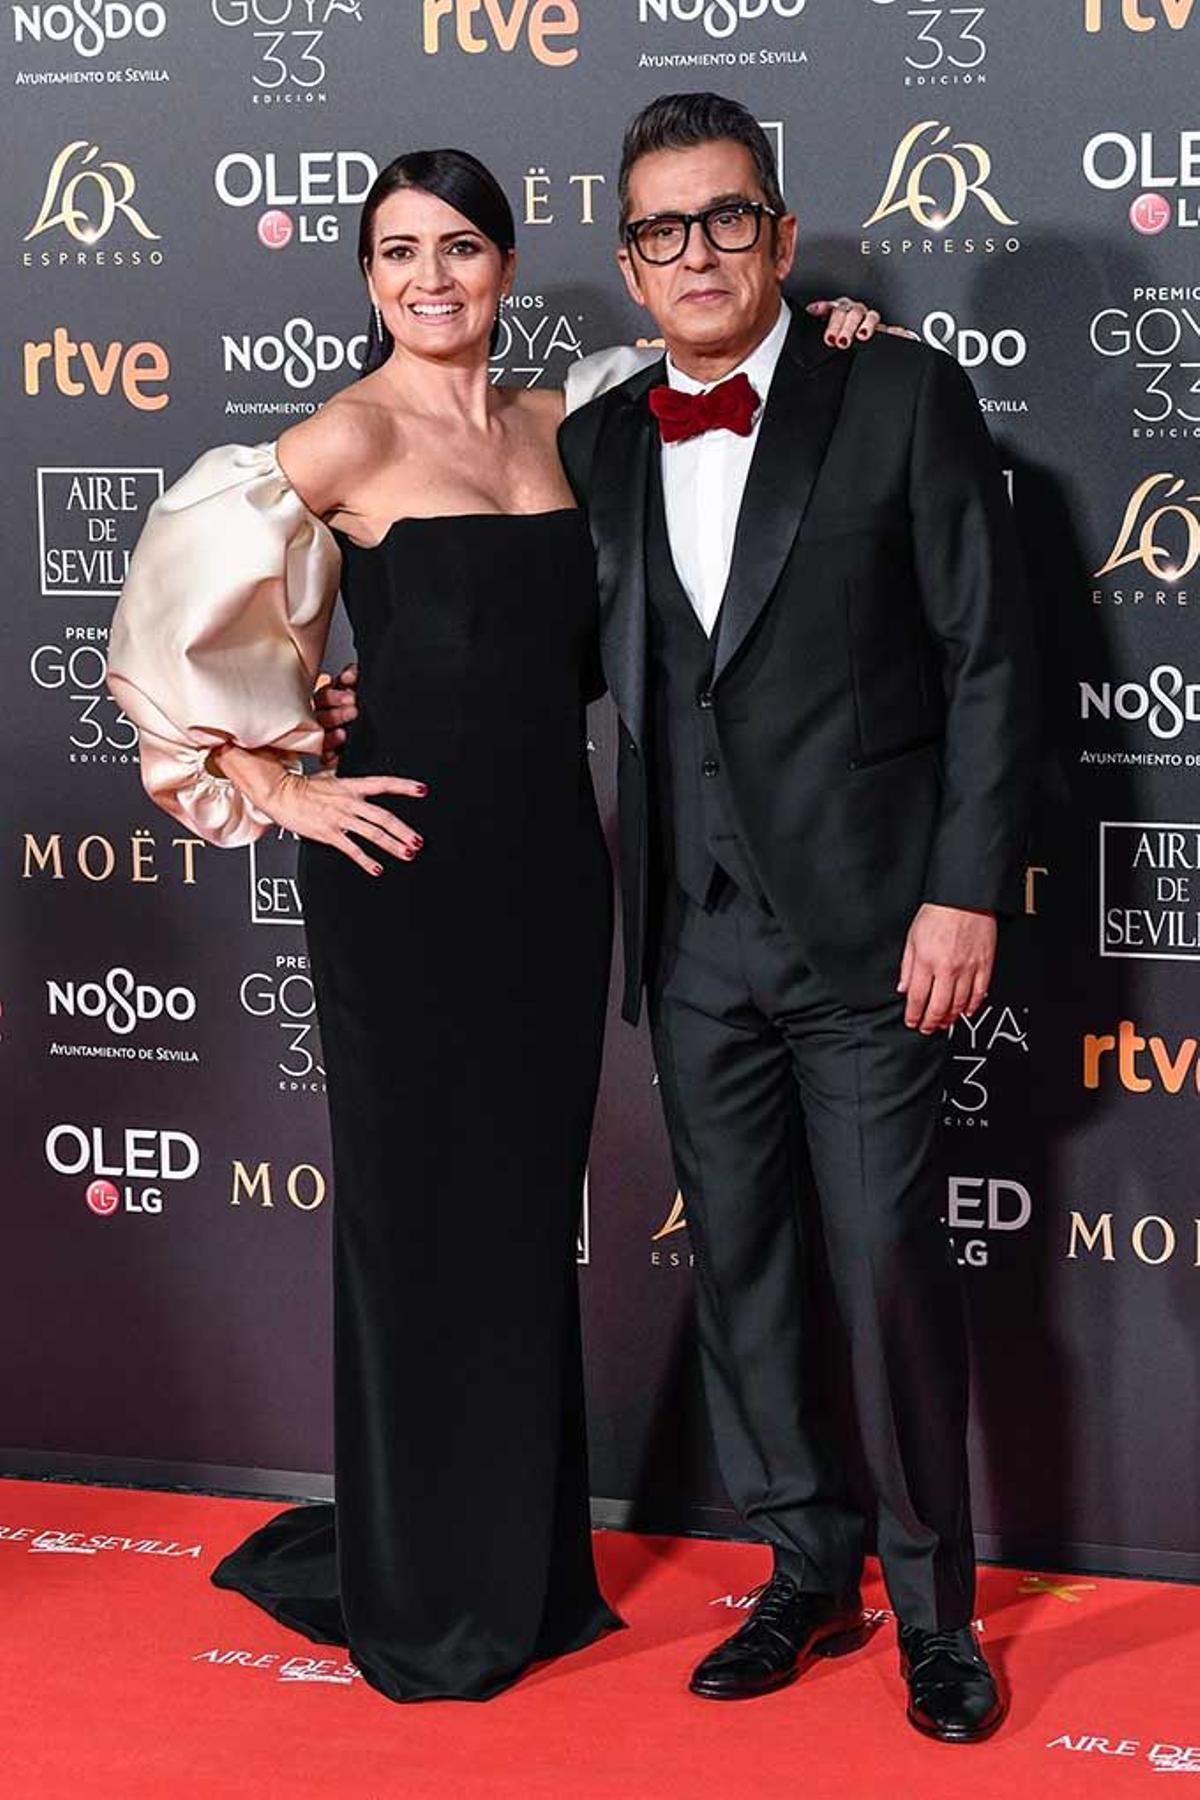 Silvia Abril y Andreu Buenafuente, presentadores de la Gala, de Pedro del Hierro